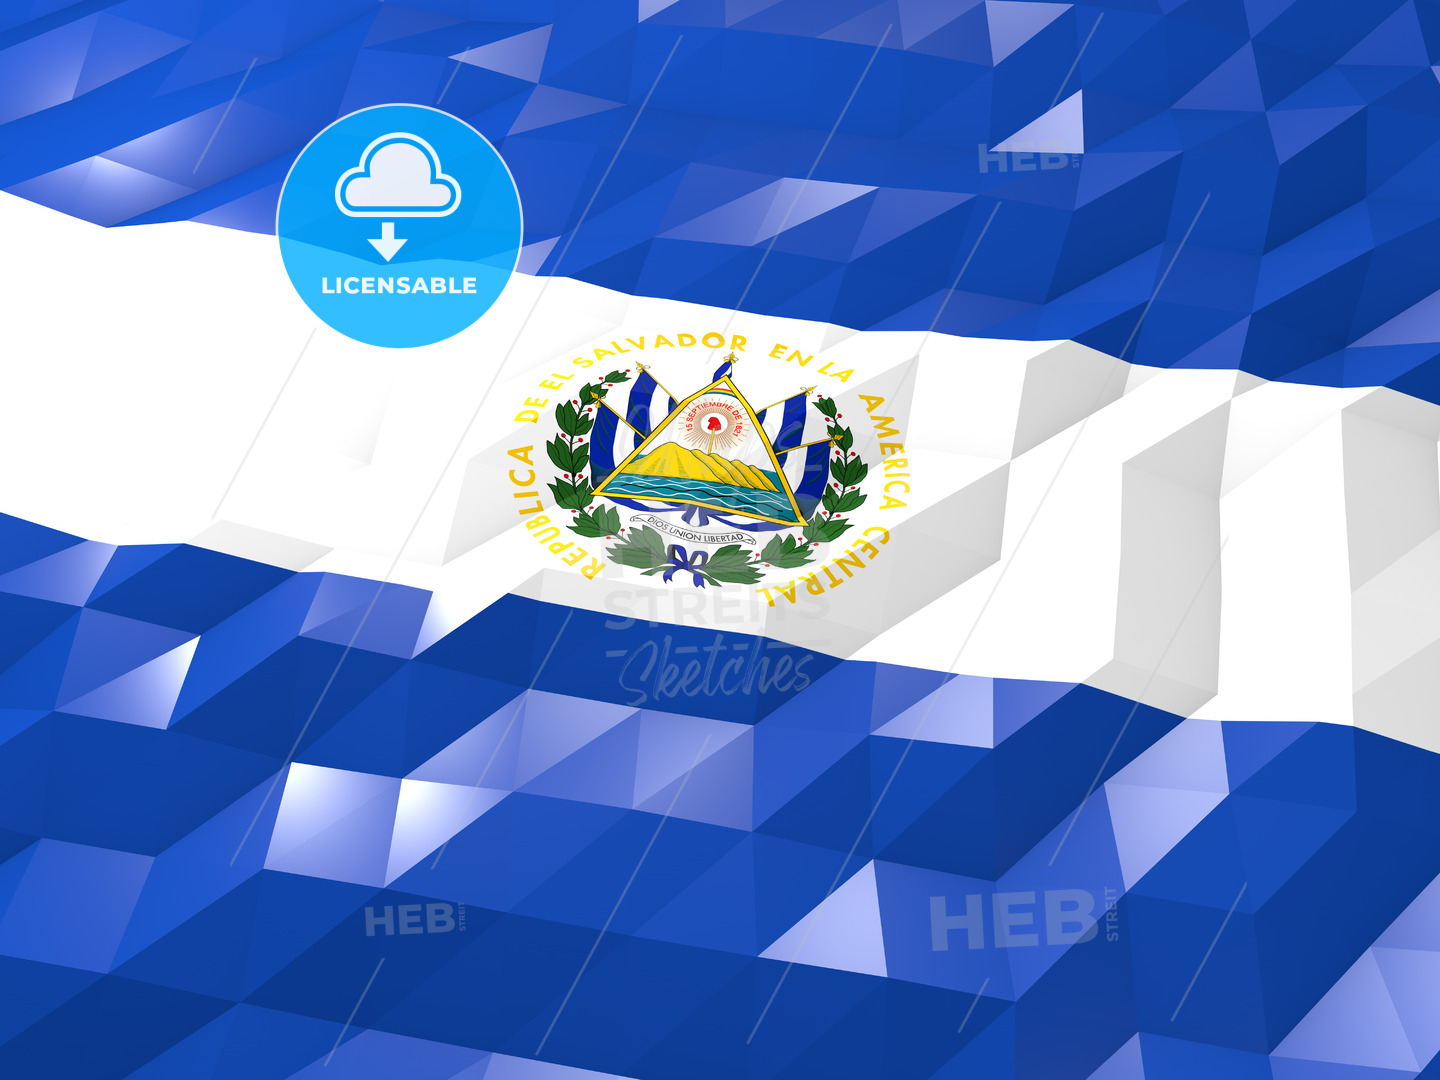 El Salvador Flag Wallpapers